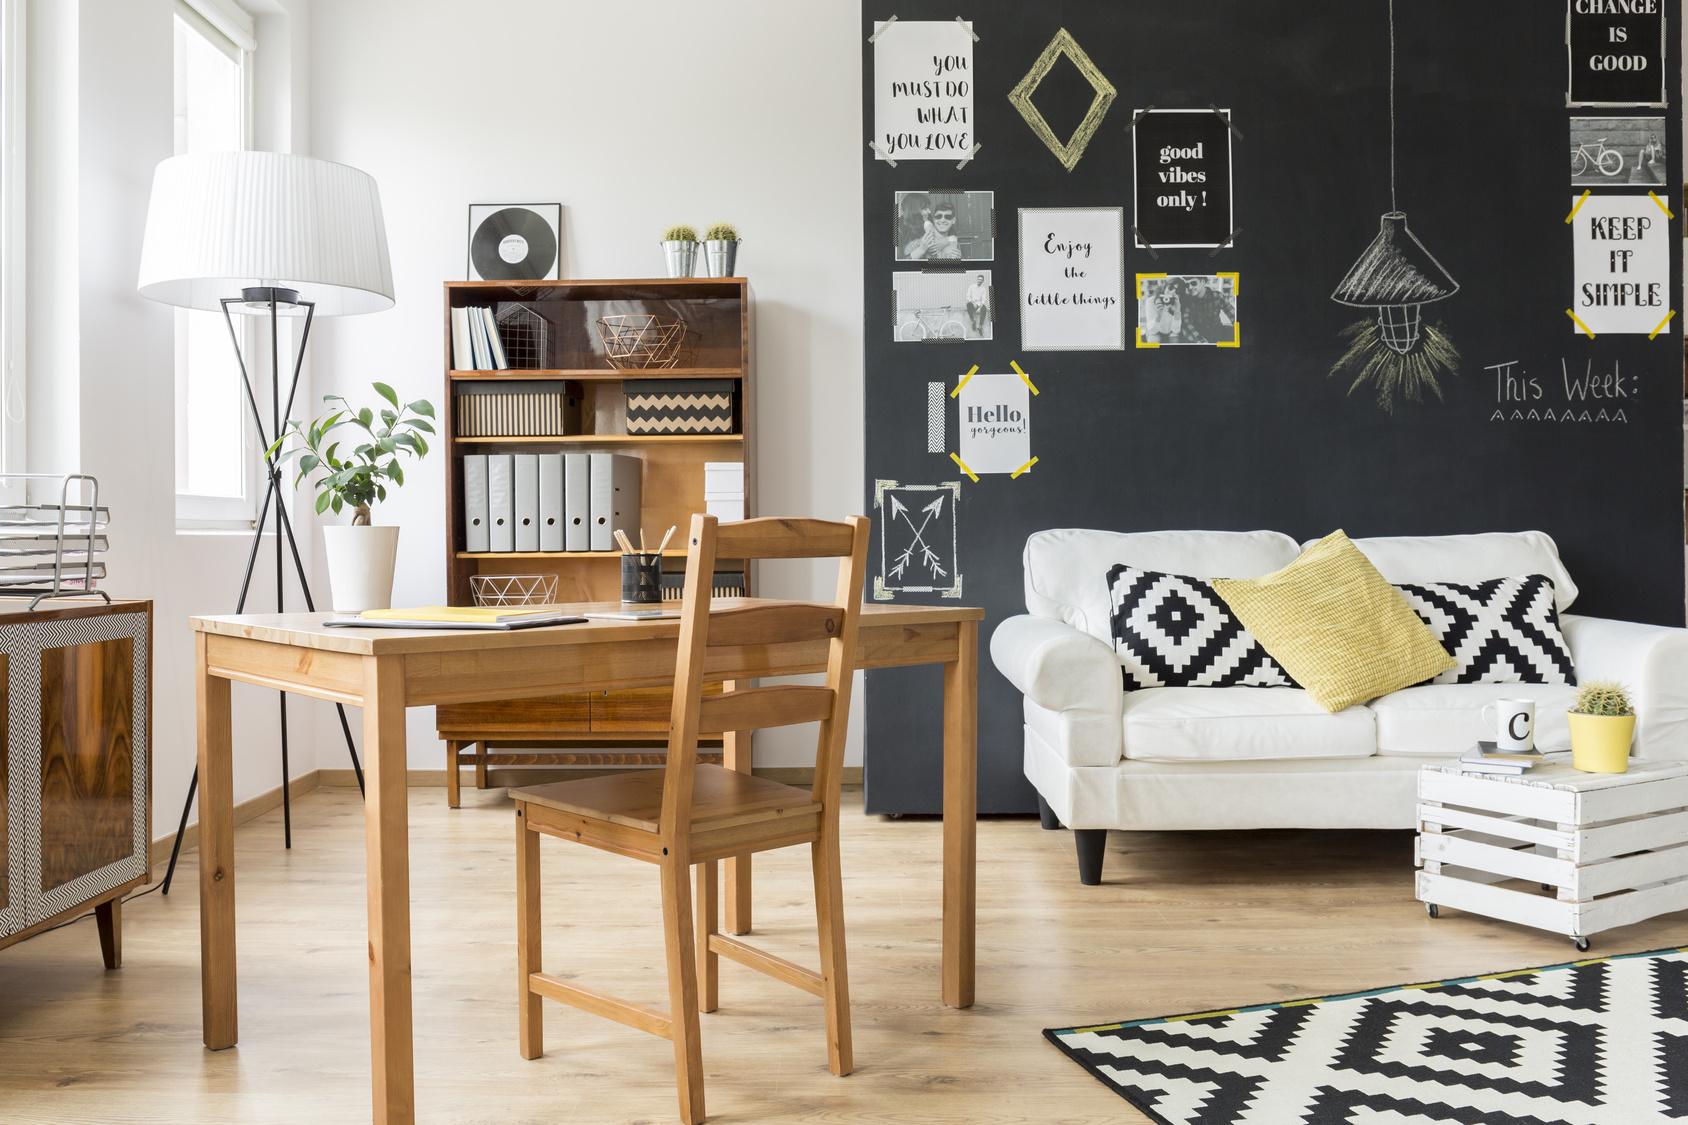 Wohnen und Arbeiten #wohnzimmer #skandinavischesdesign #nordicstyle ©Photographee.eu - Fotolia